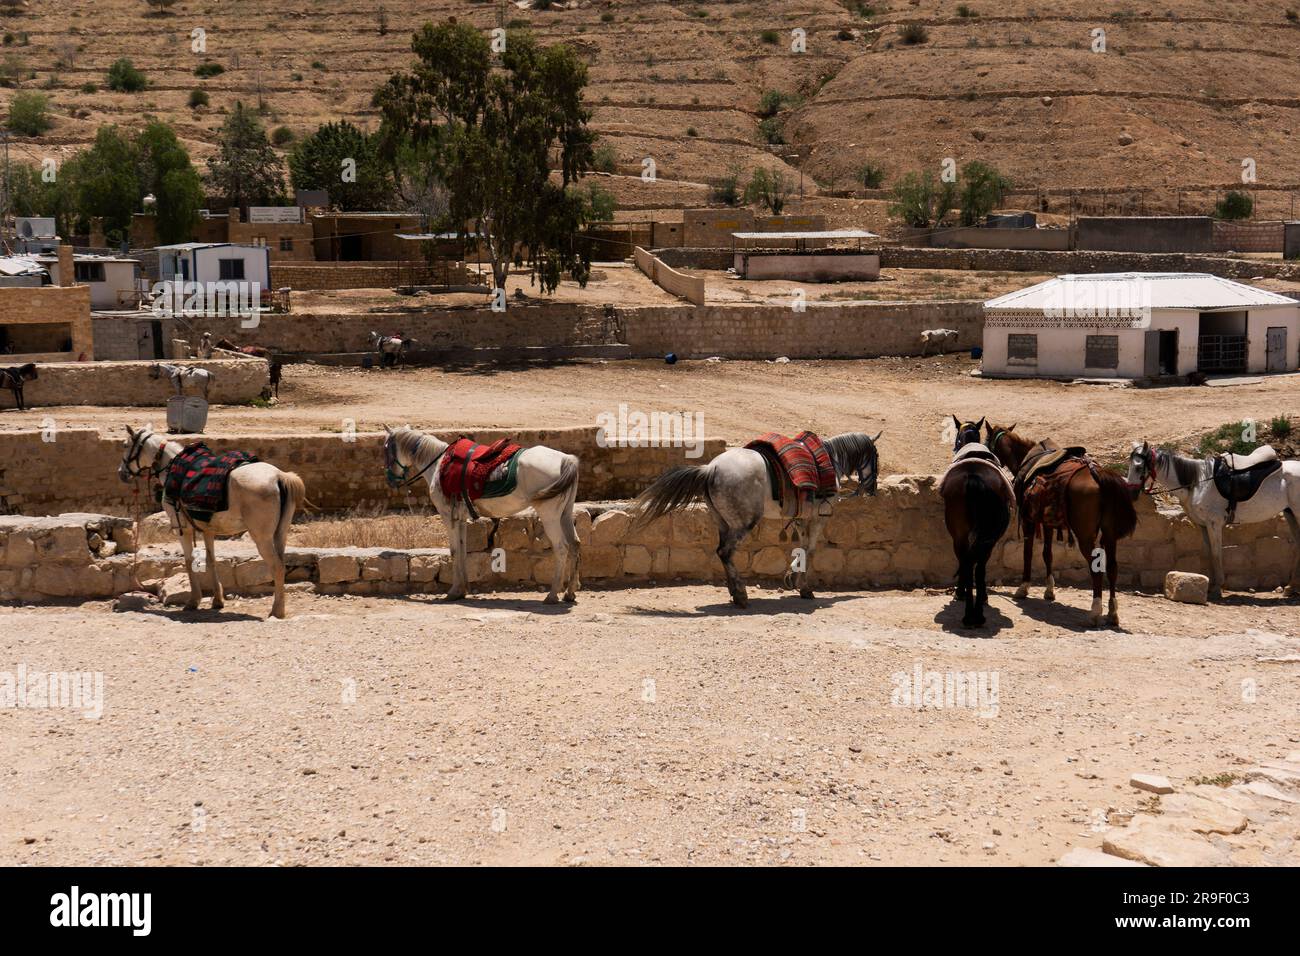 Luogo di riposo per cavalli a Petra. I cavalli sono lì per aiutare i turisti a scoprire più facilmente questo bellissimo sito archeologico. Foto Stock